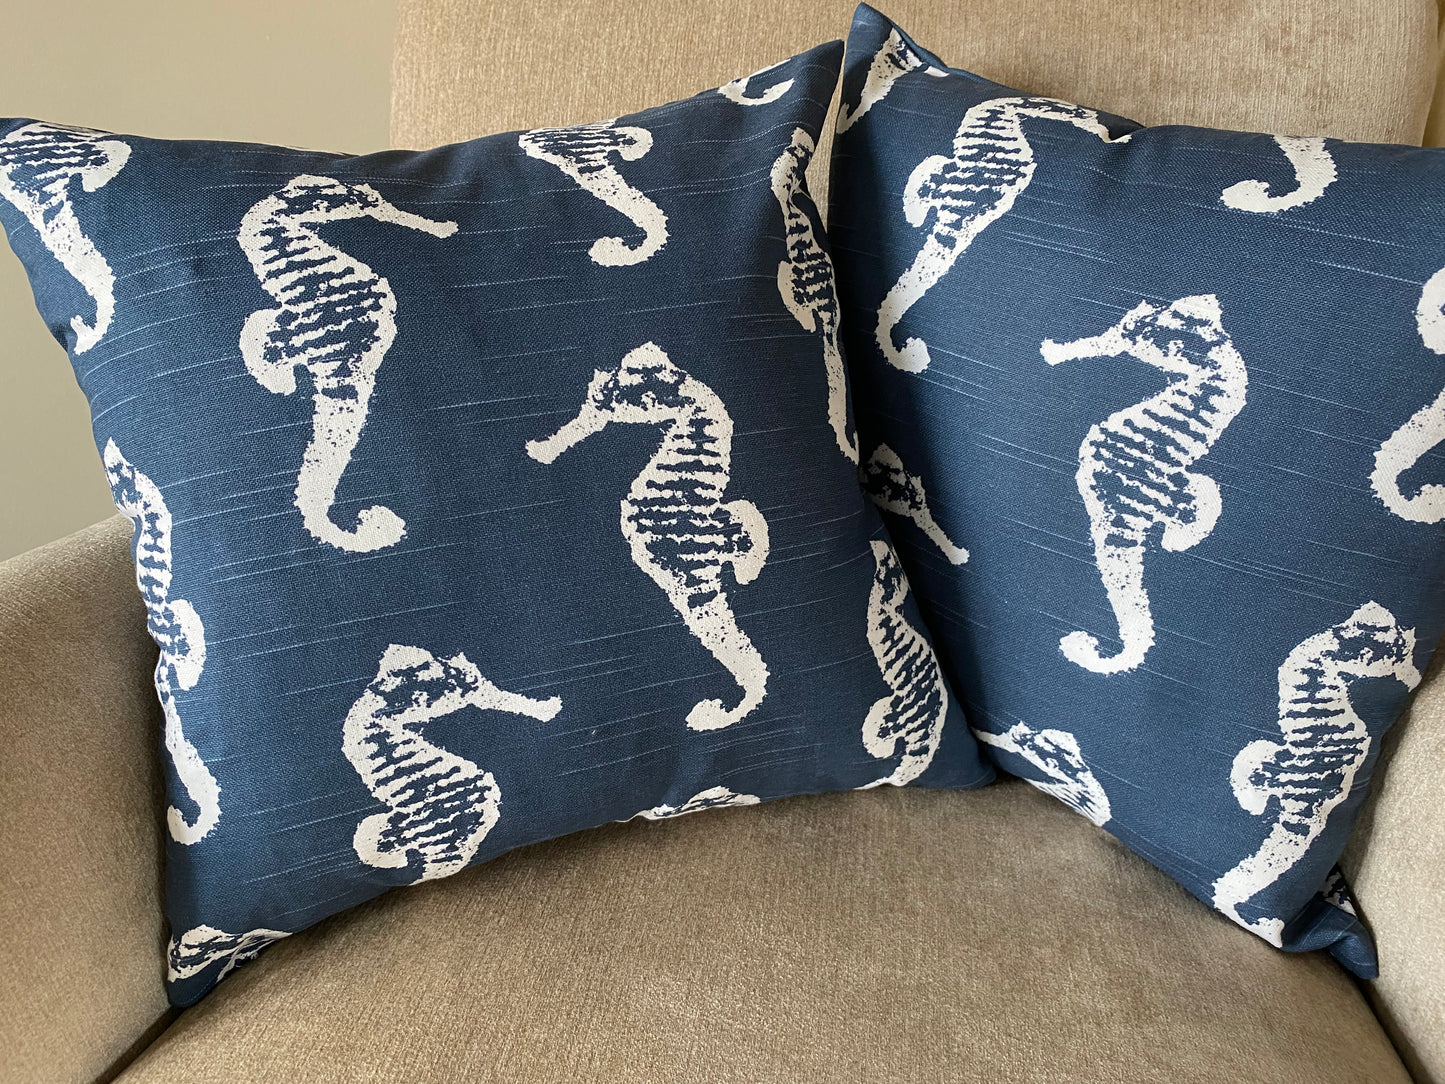 Blue Seahorse Accent Cushion